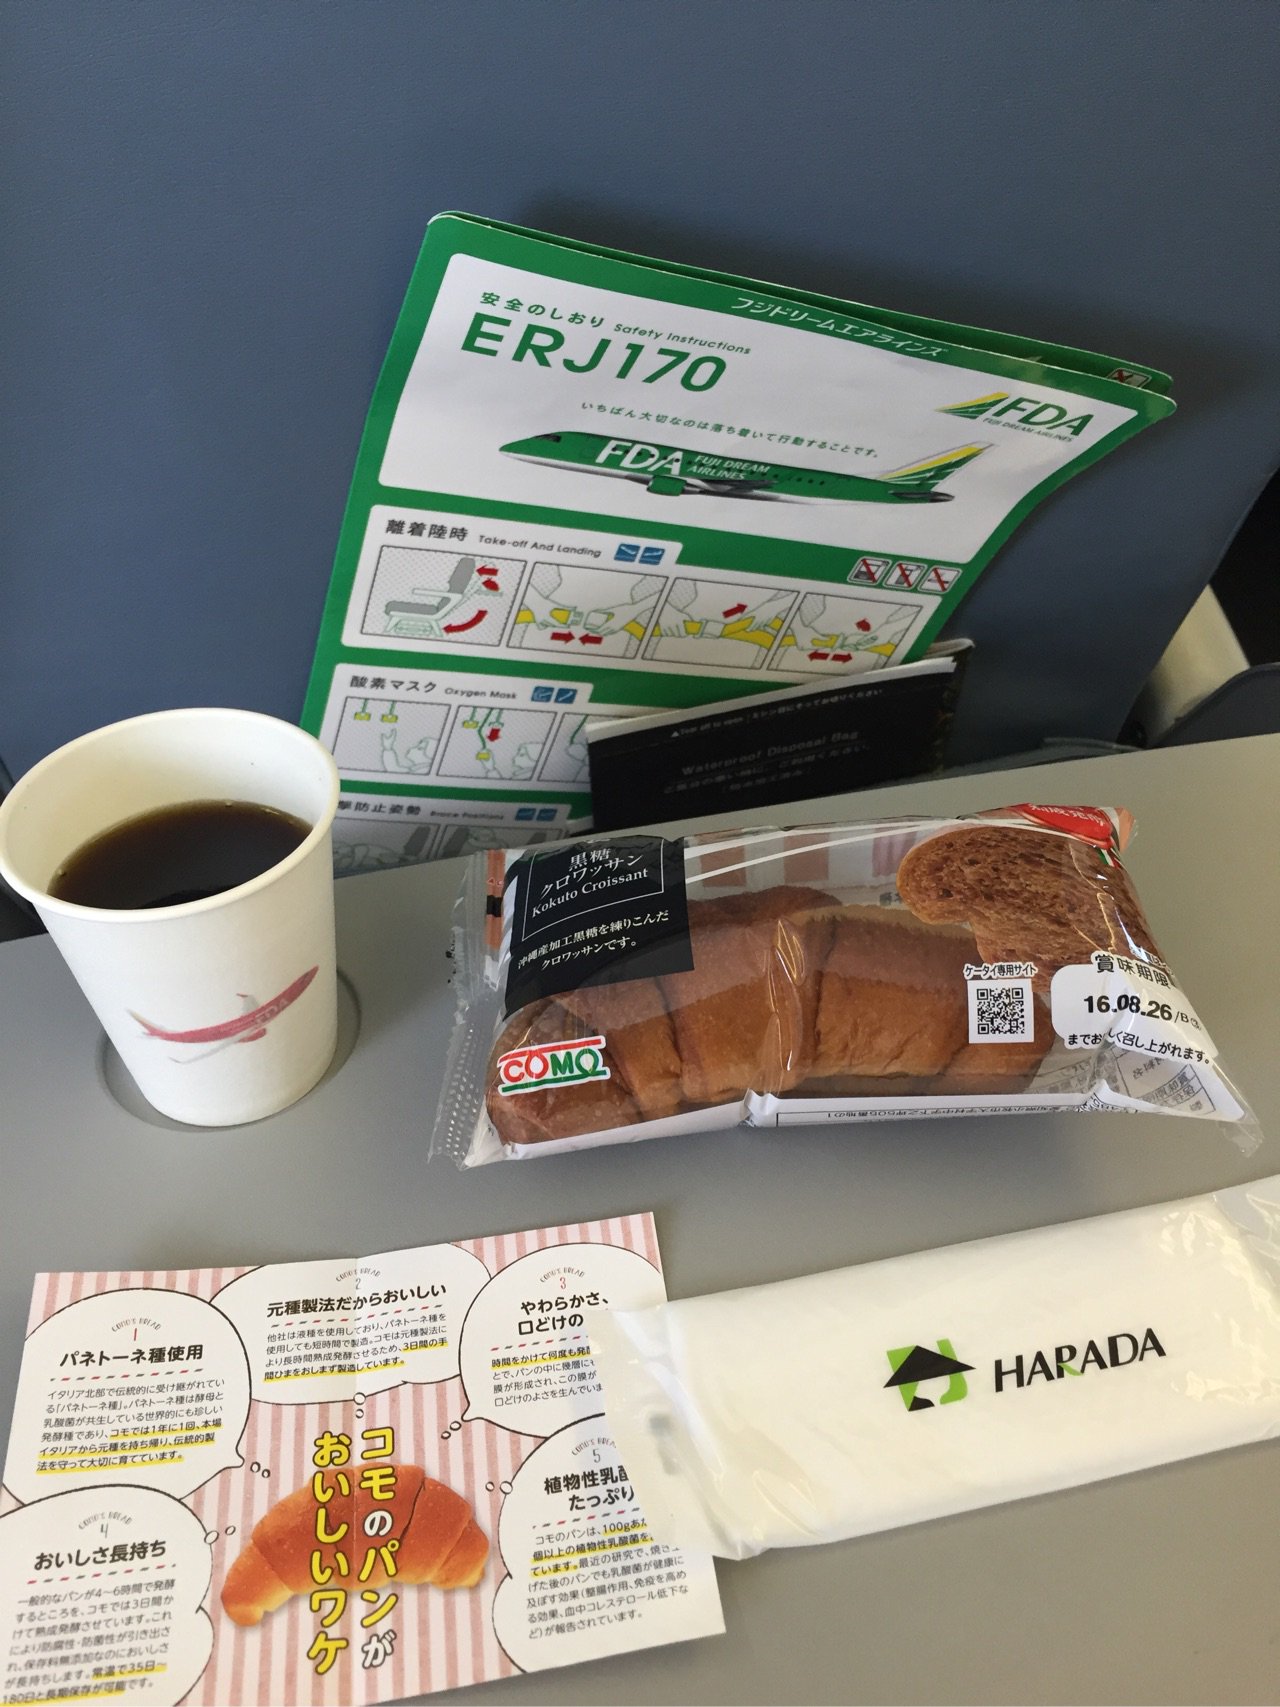 FDAでは機内食は出ないものかと思ってたけど、朝だからか小牧のcomoパンと飲み物をもらえた。 